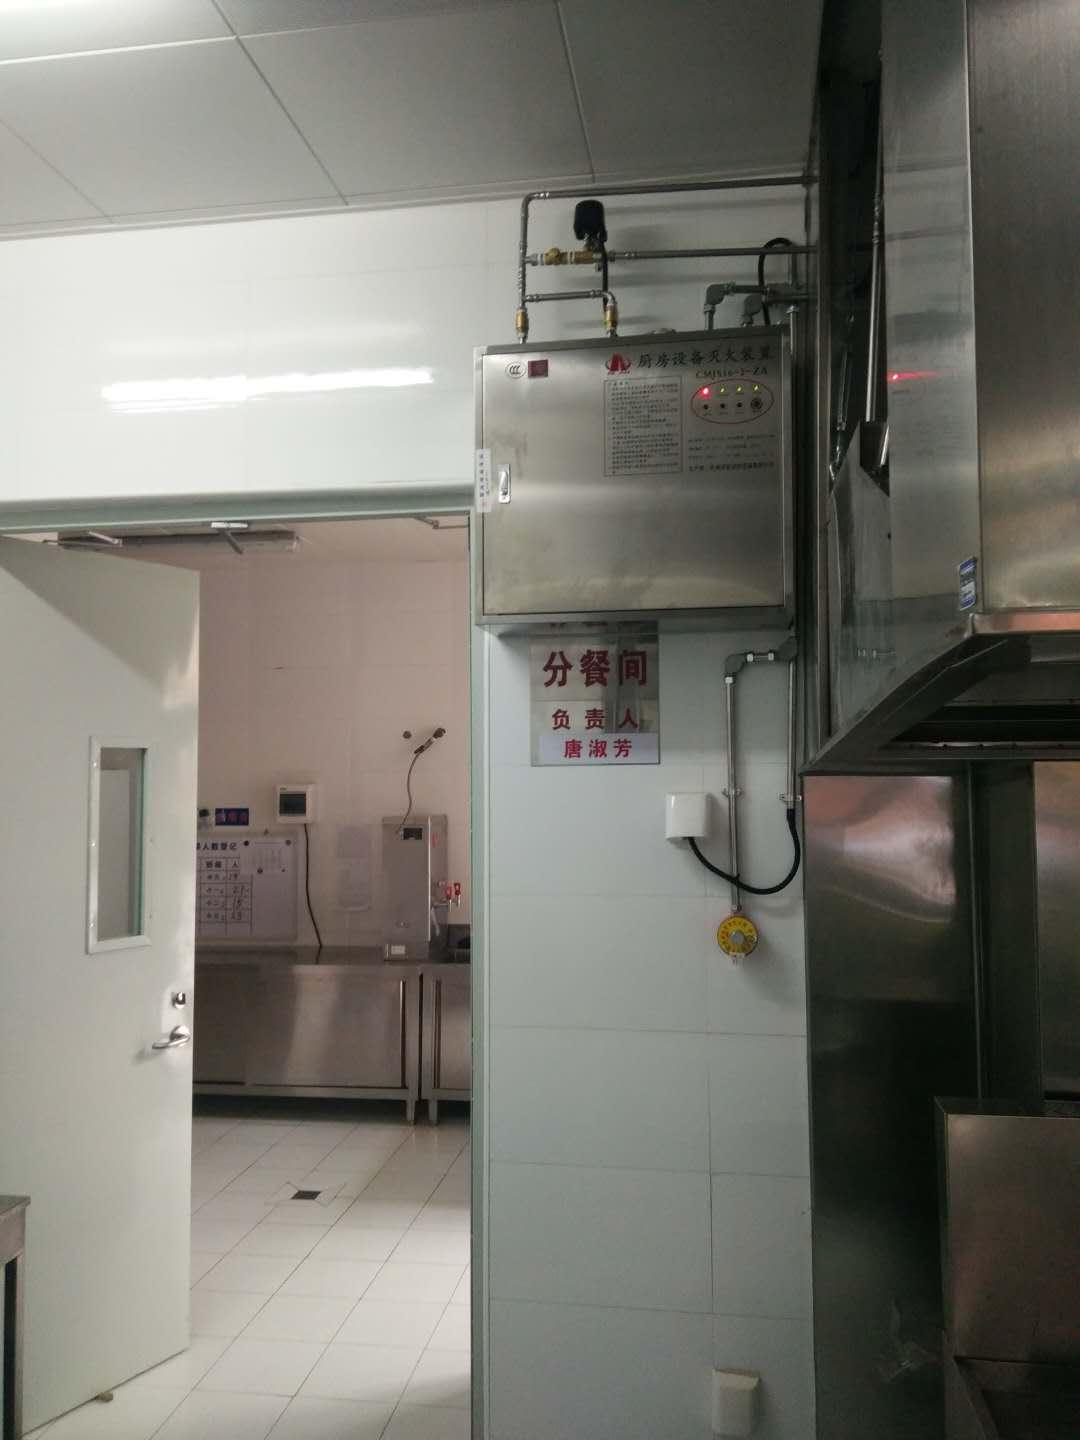 北京供應廚房自動滅火裝置安裝公司 歡迎來電咨詢